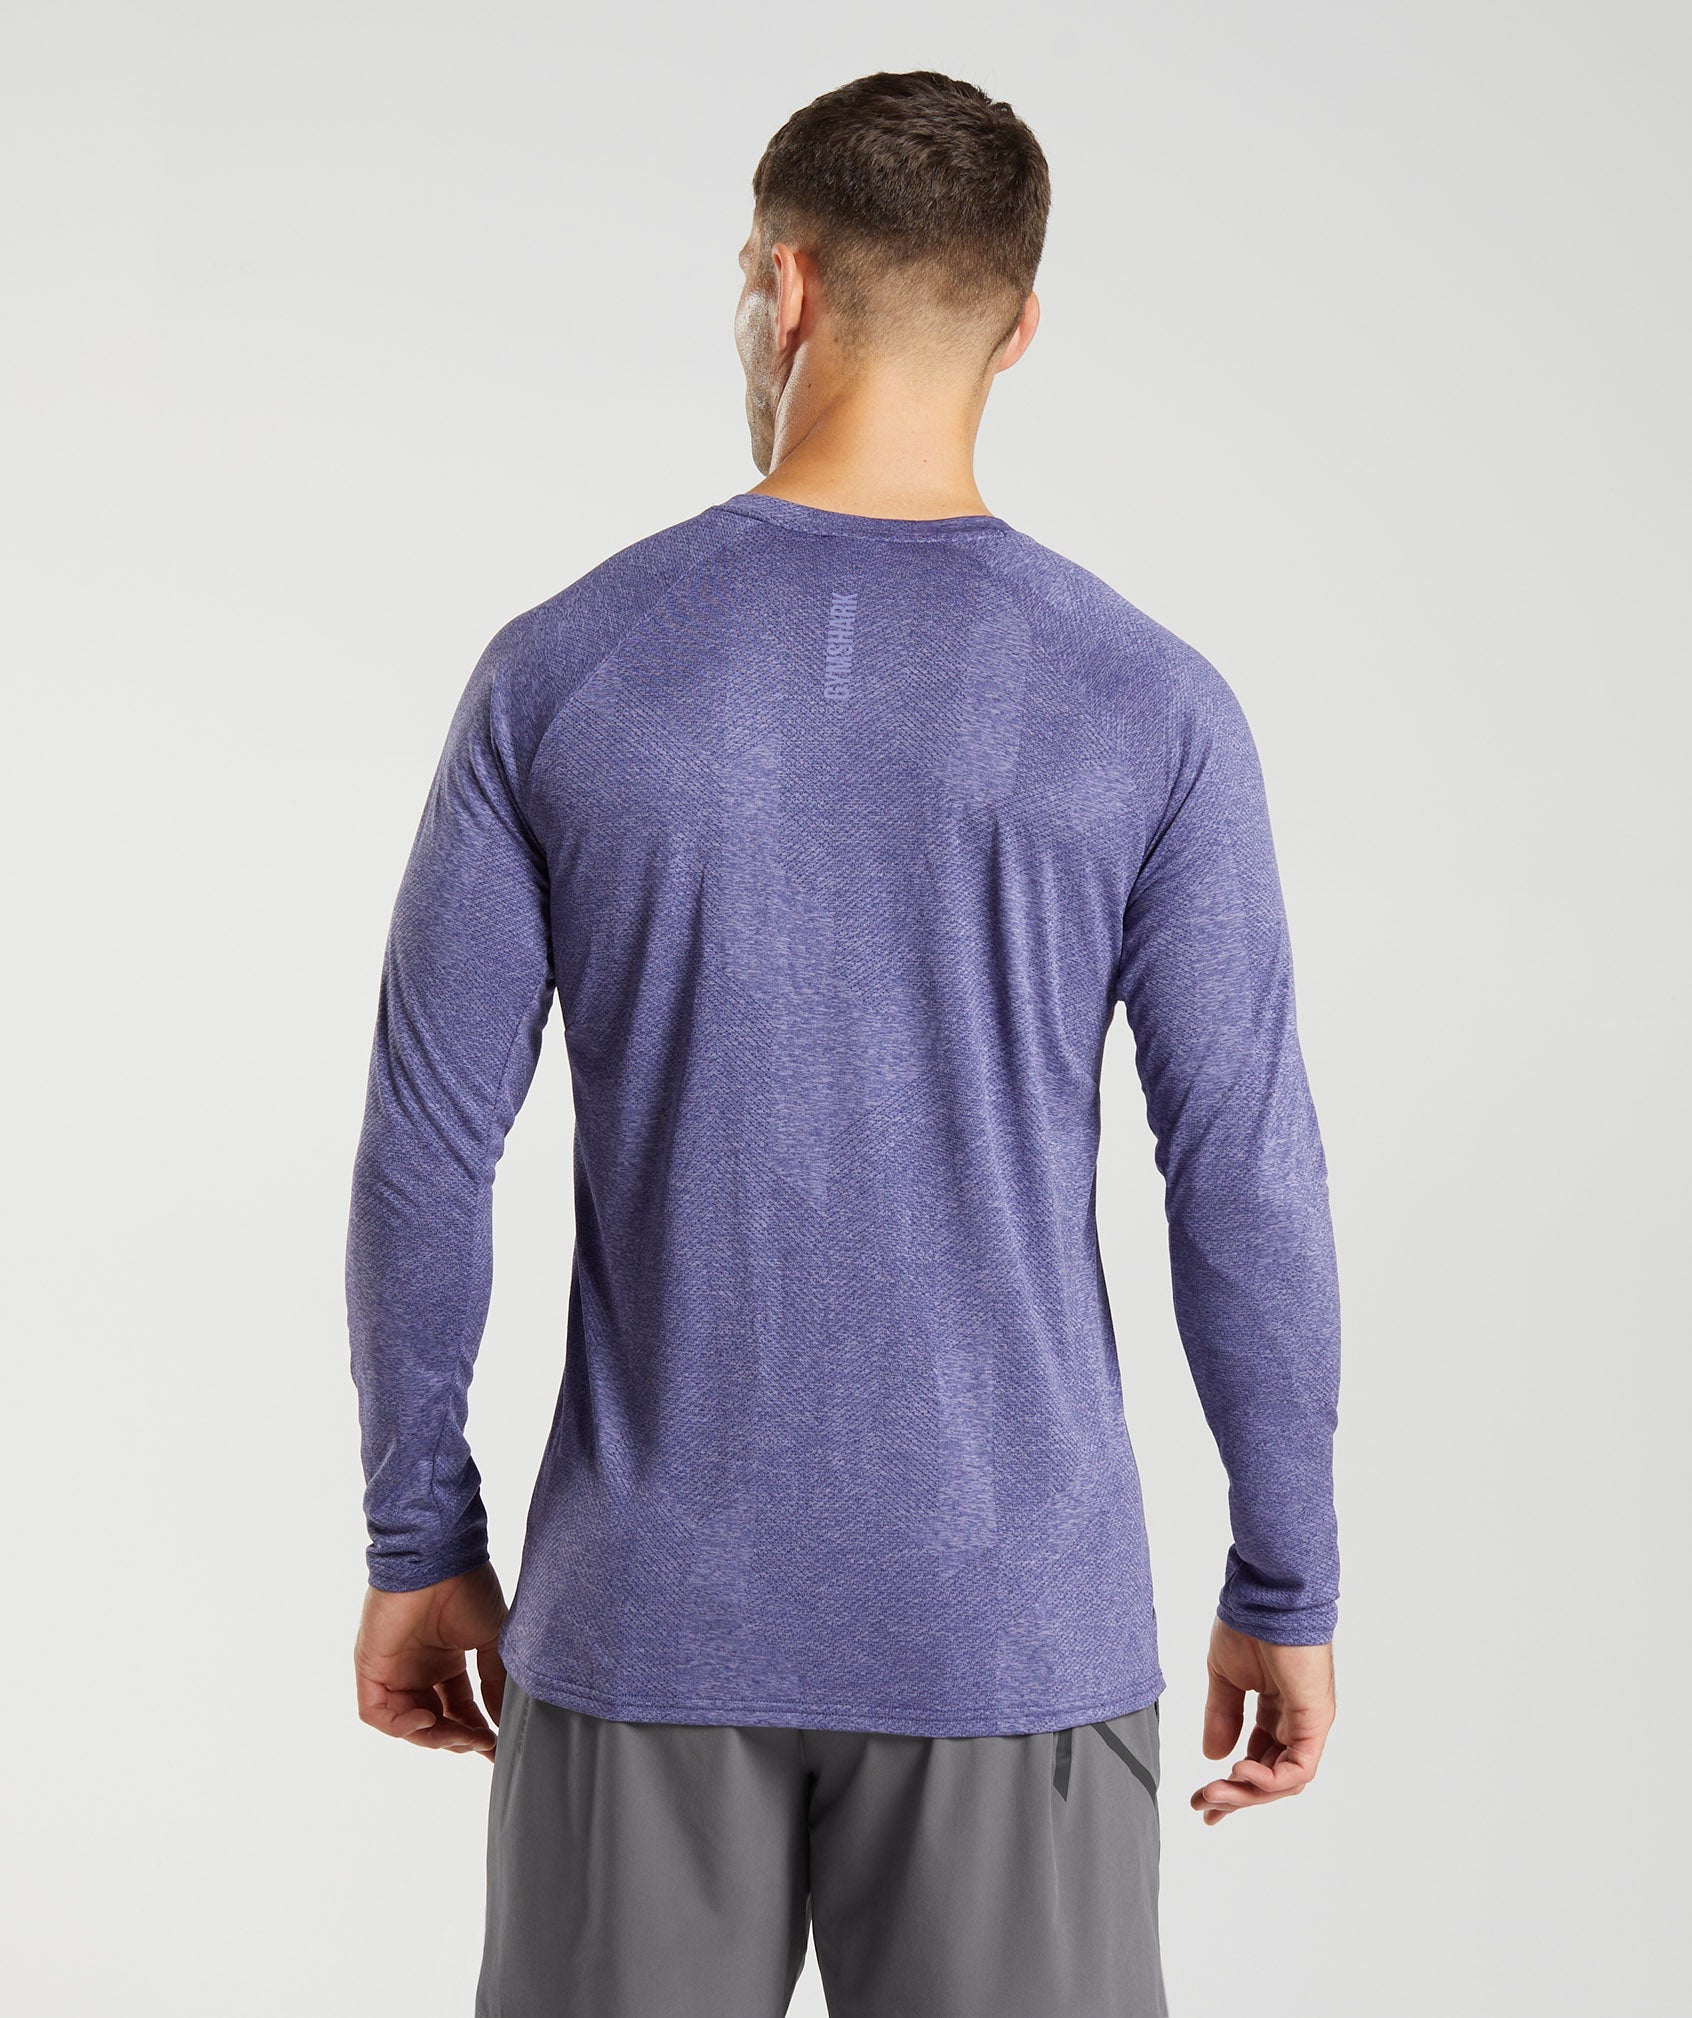 Apex Long Sleeve T-Shirt in Neptune Purple/Velvet Purple